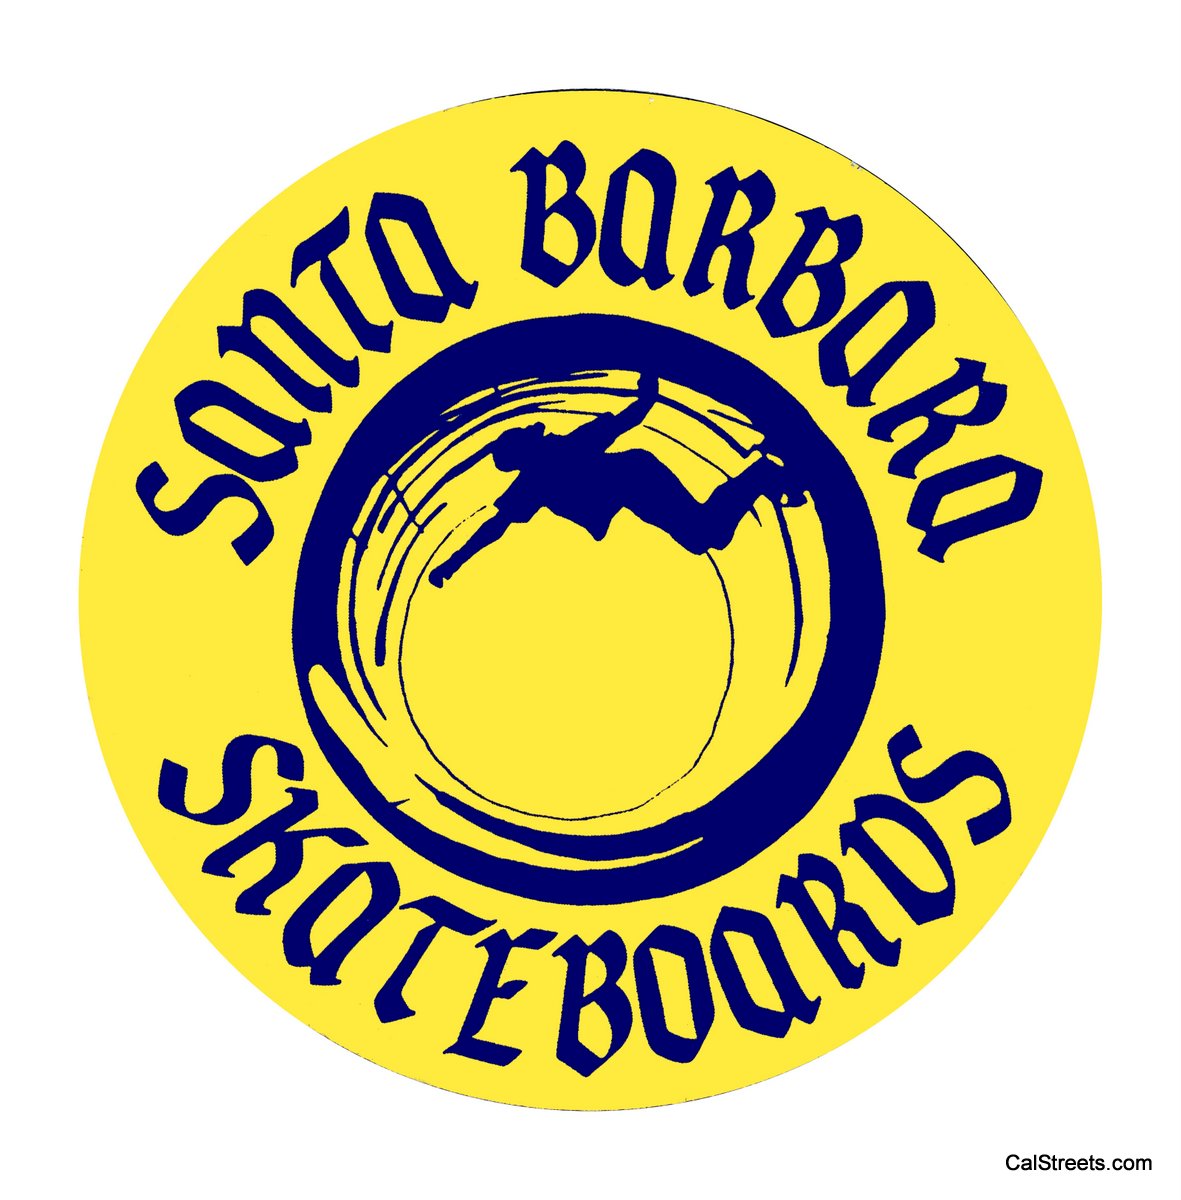 Santa-Barbara-Skateboards-Reversed1.jpg